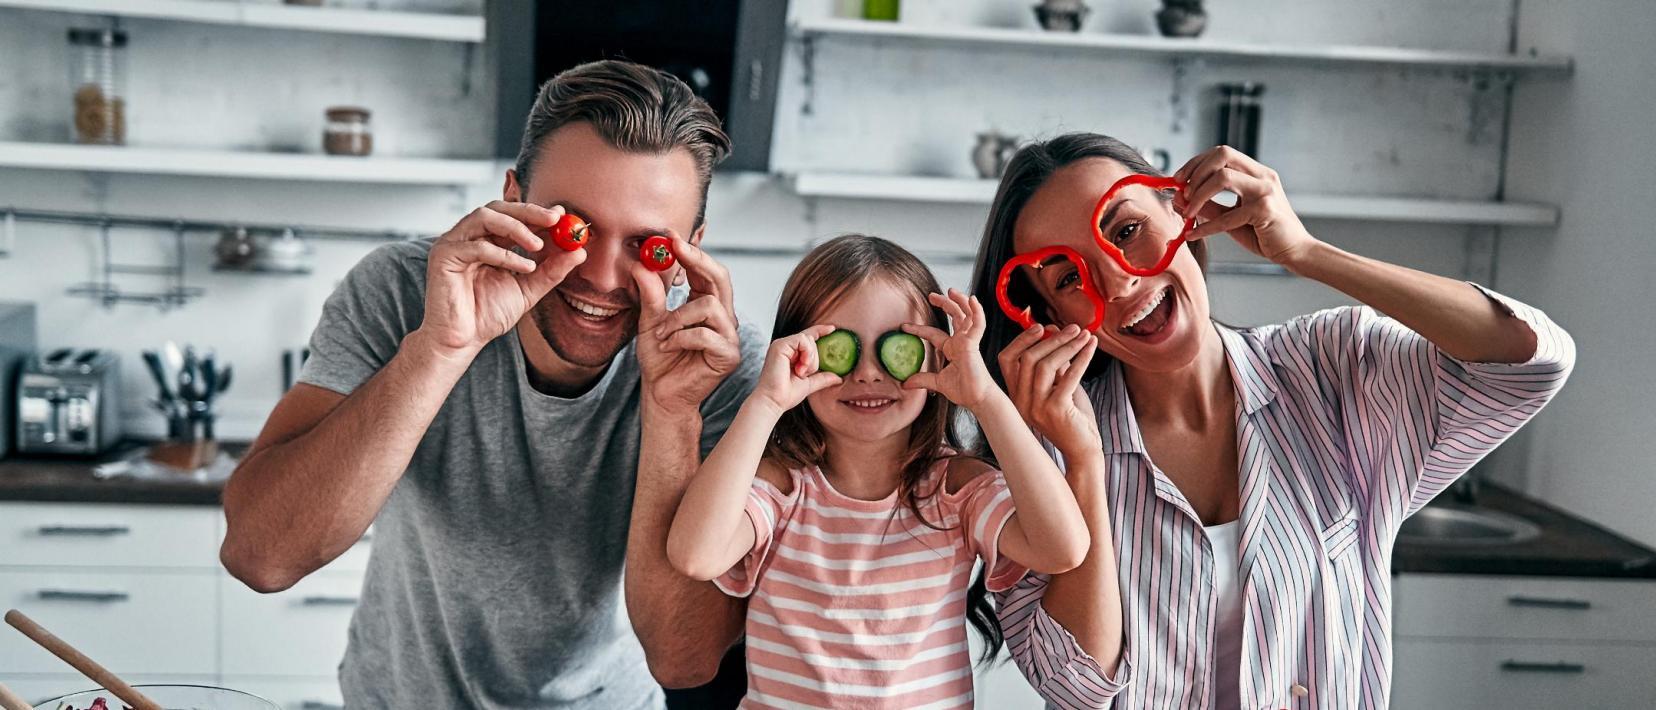 Vater, Mutter und in der Mitte ein Kind stehen an der Küchenzeile und halten lachend Gemüsestücke wie Masken vor ihre Gesichter. Vor ihnen liegen noch mehr Gemüsesorten.